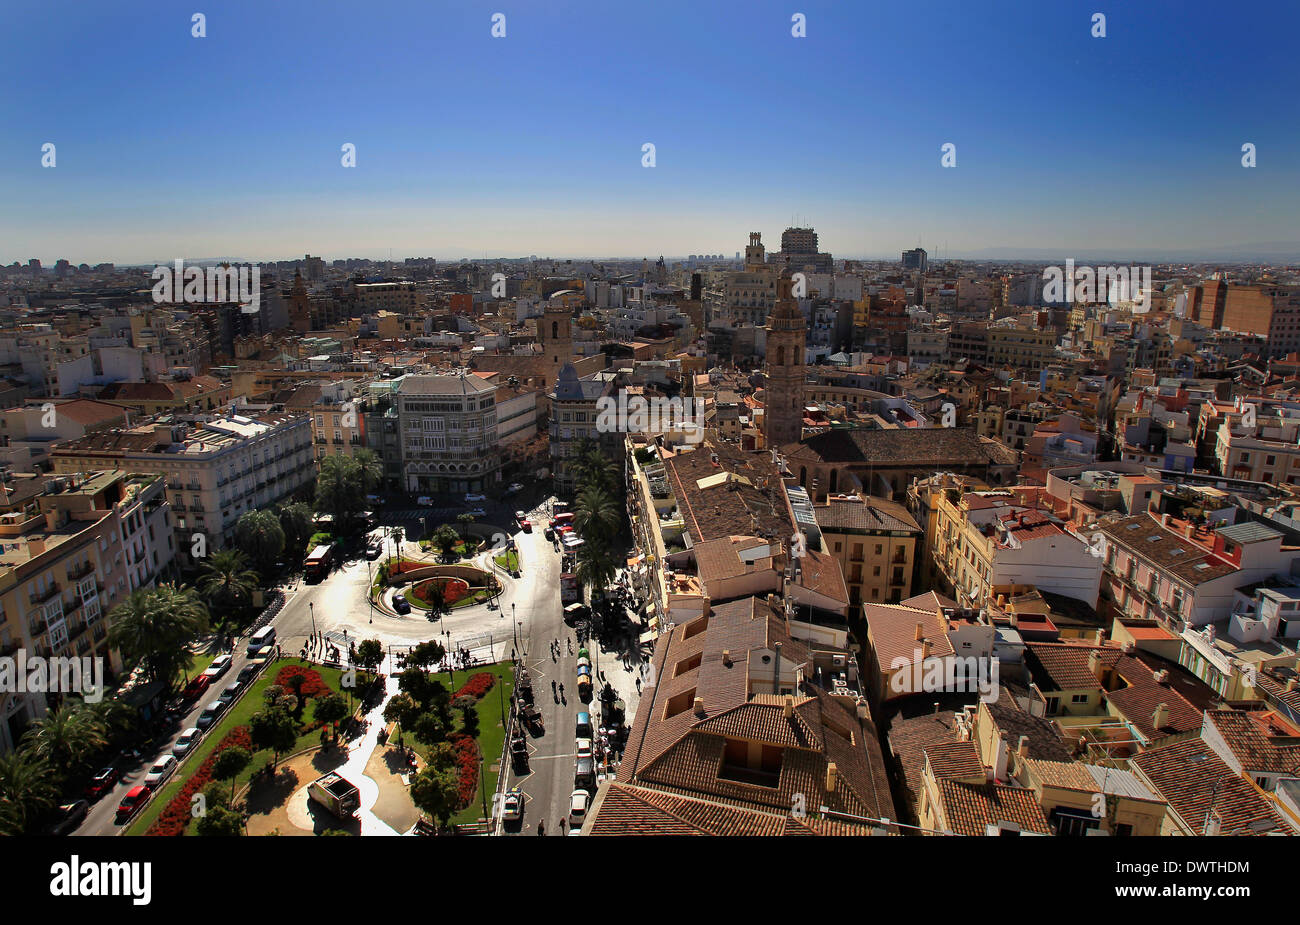 Une vue générale de la place de la Reine de la partie supérieure de la Miguelete, la tour de la cathédrale de Valence, Valence, Espagne Banque D'Images